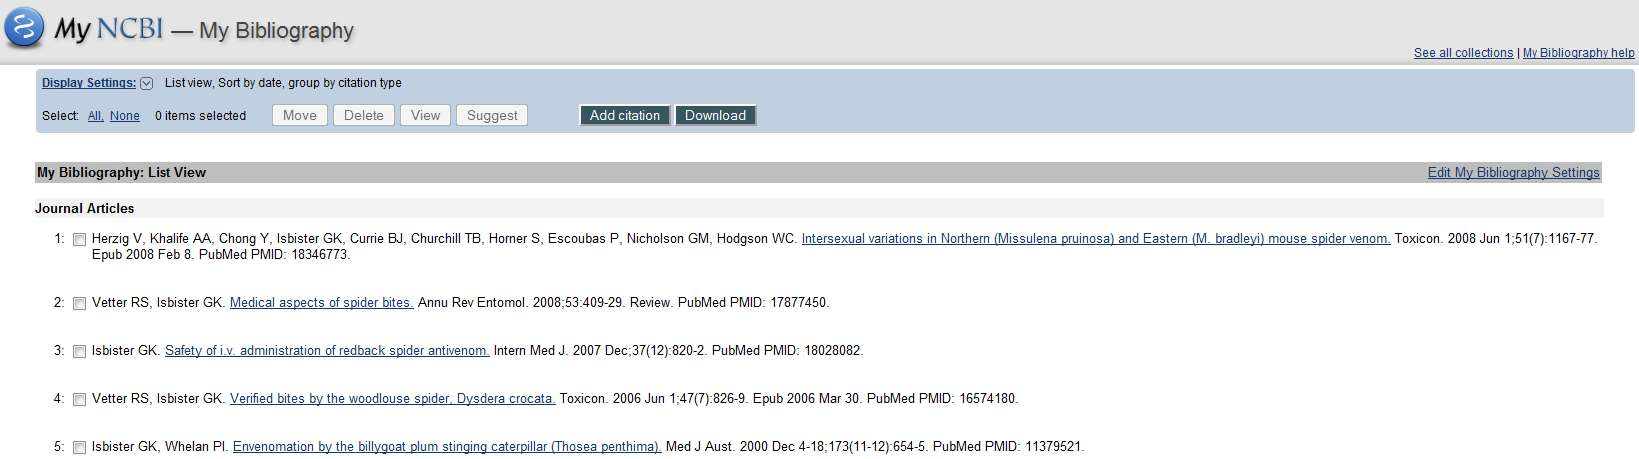 Historikk 85 Recent Activity () gir deg en oversikt over din aktivitet på PubMed (kun når du har vært pålogget MyNCBI) de siste seks måneder.